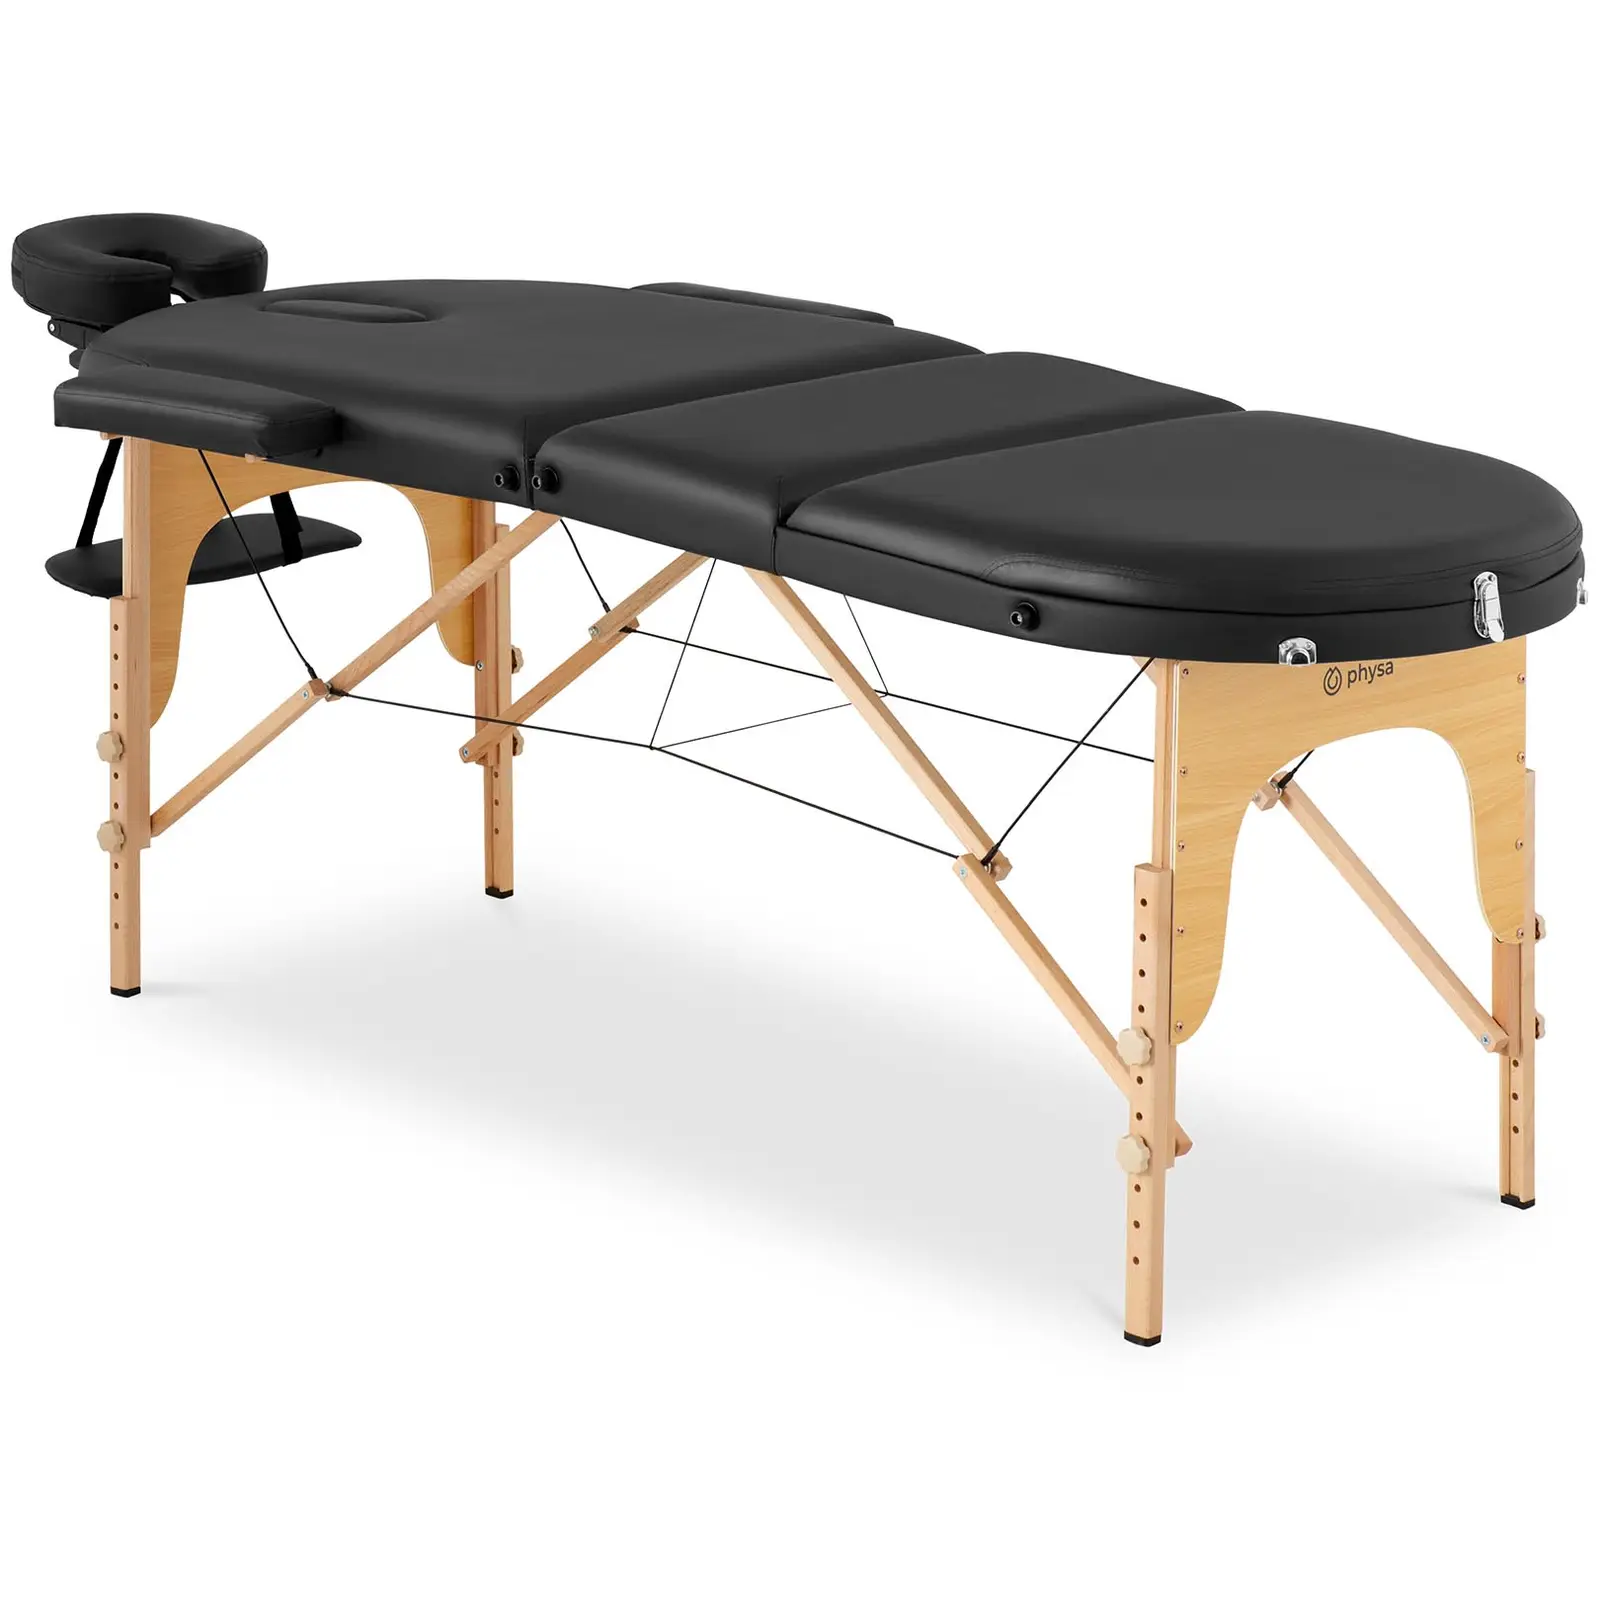 table de massage pliante - 185-211 x 70-88 x 63-85 cm - 227 kg - Noir